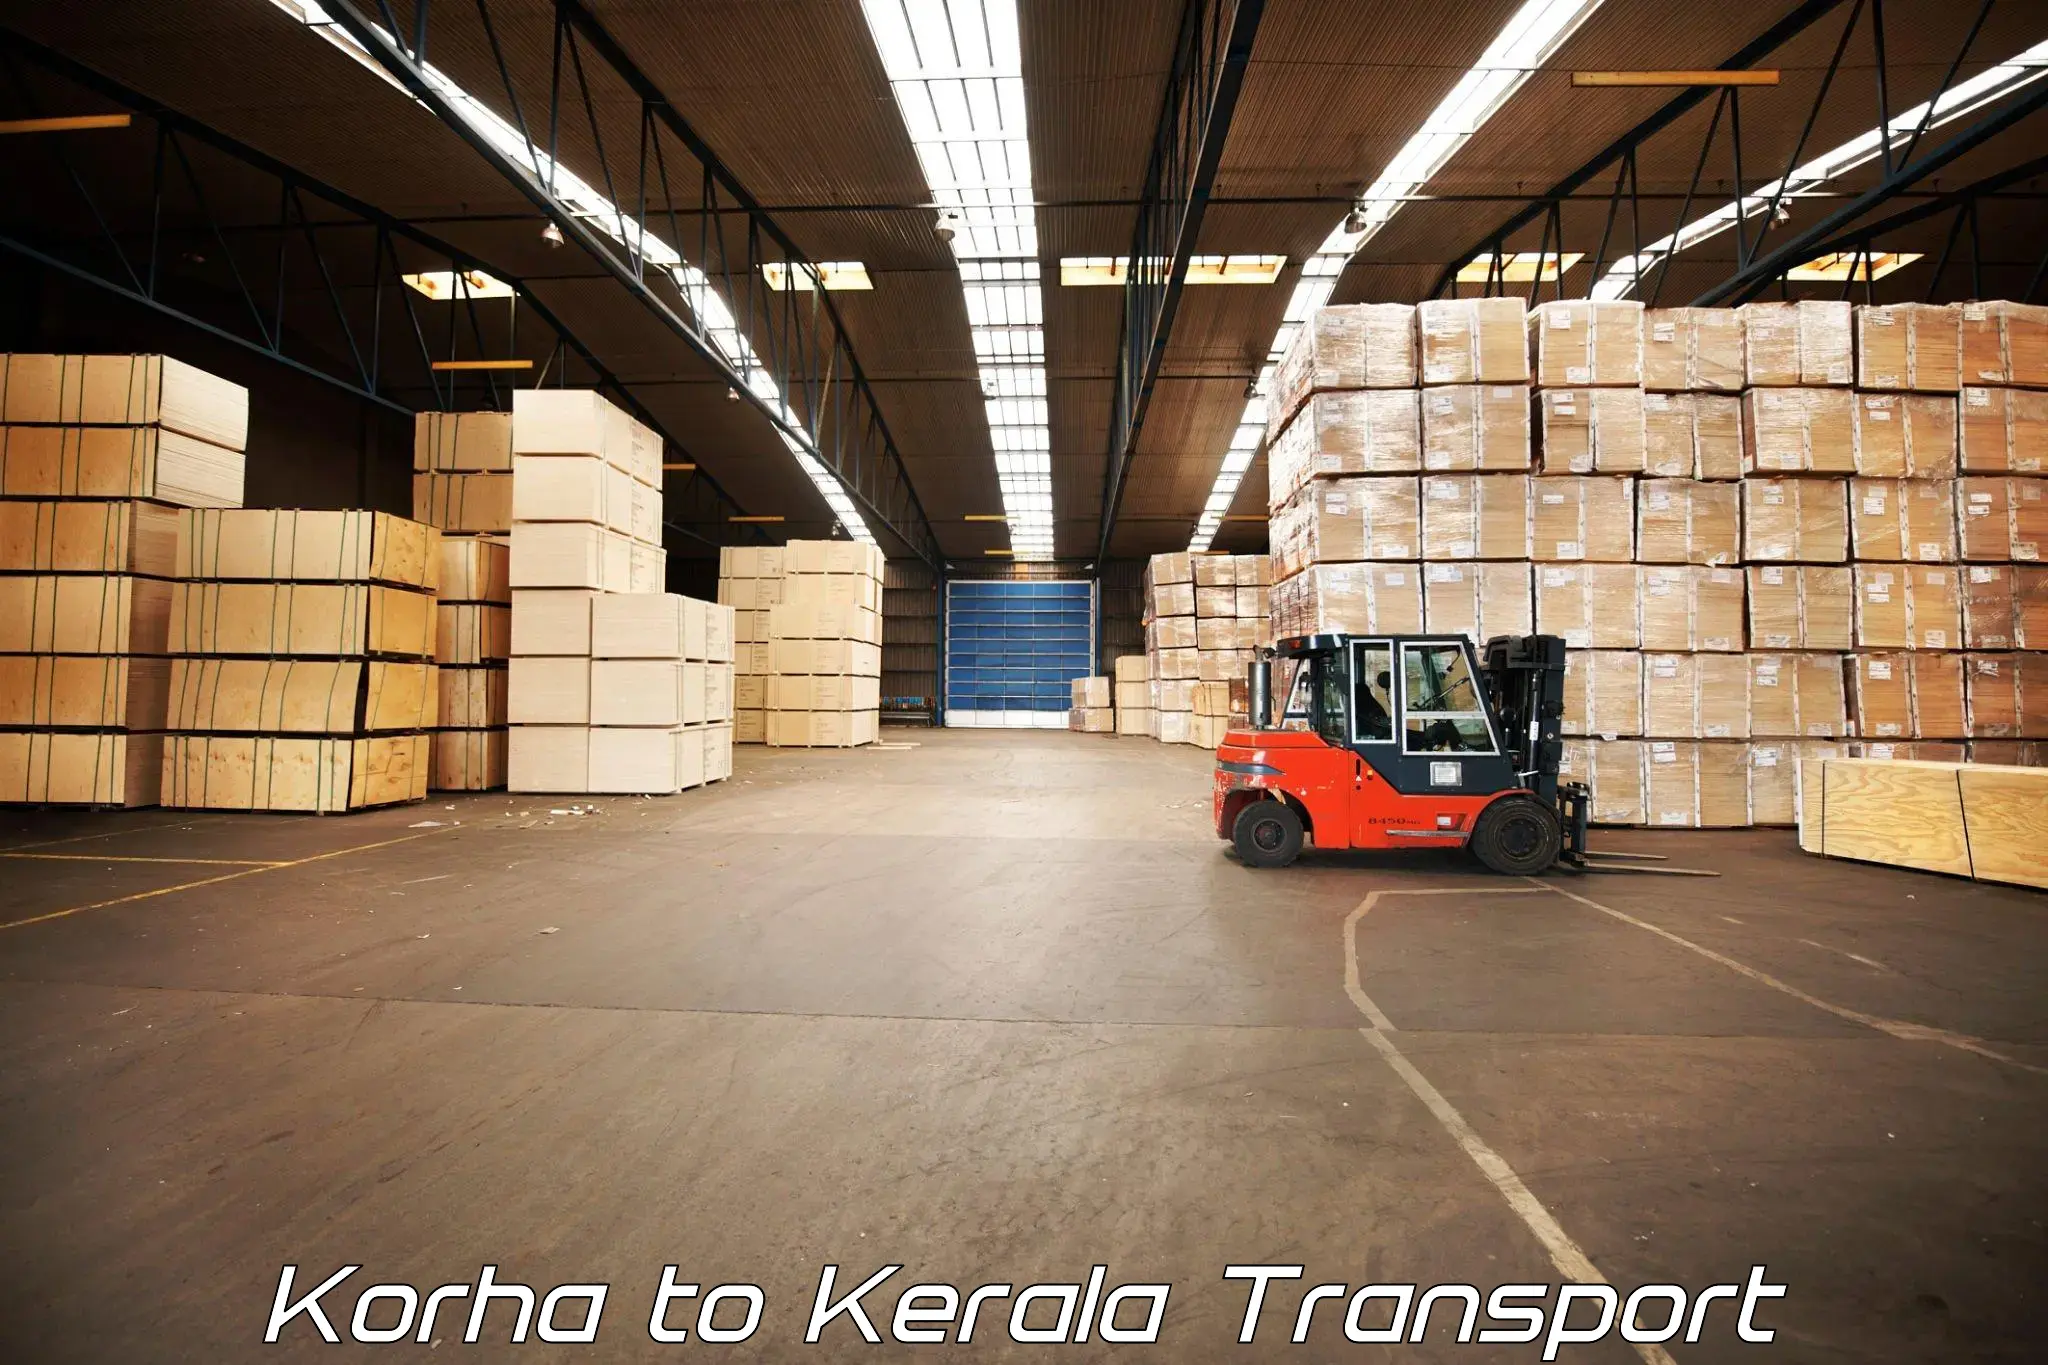 Online transport service Korha to Trivandrum